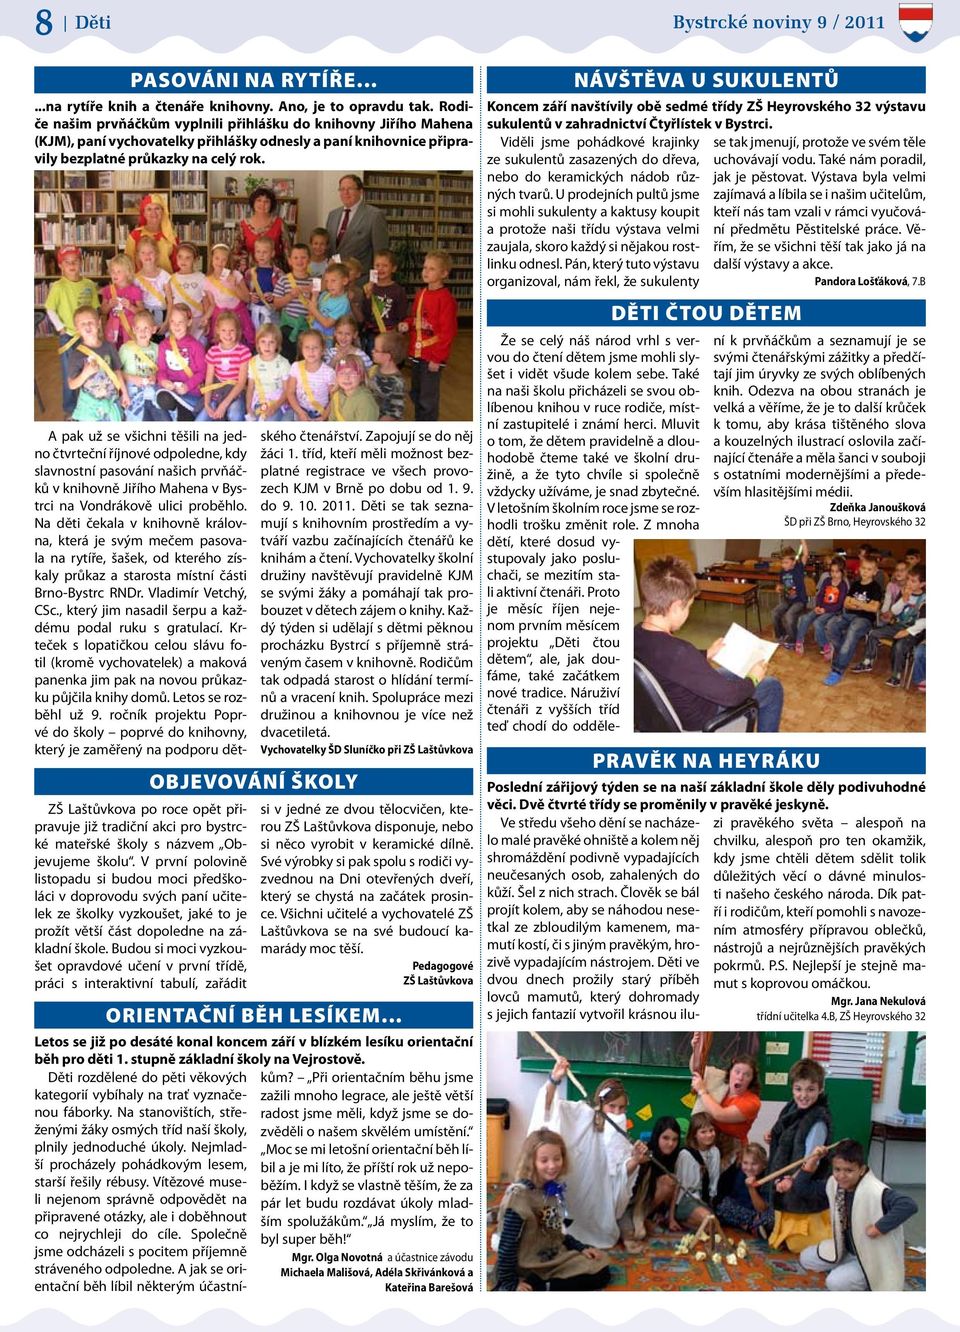 ZŠ Laštůvkova po roce opět připravuje již tradiční akci pro bystrcké mateřské školy s názvem Objevujeme školu.